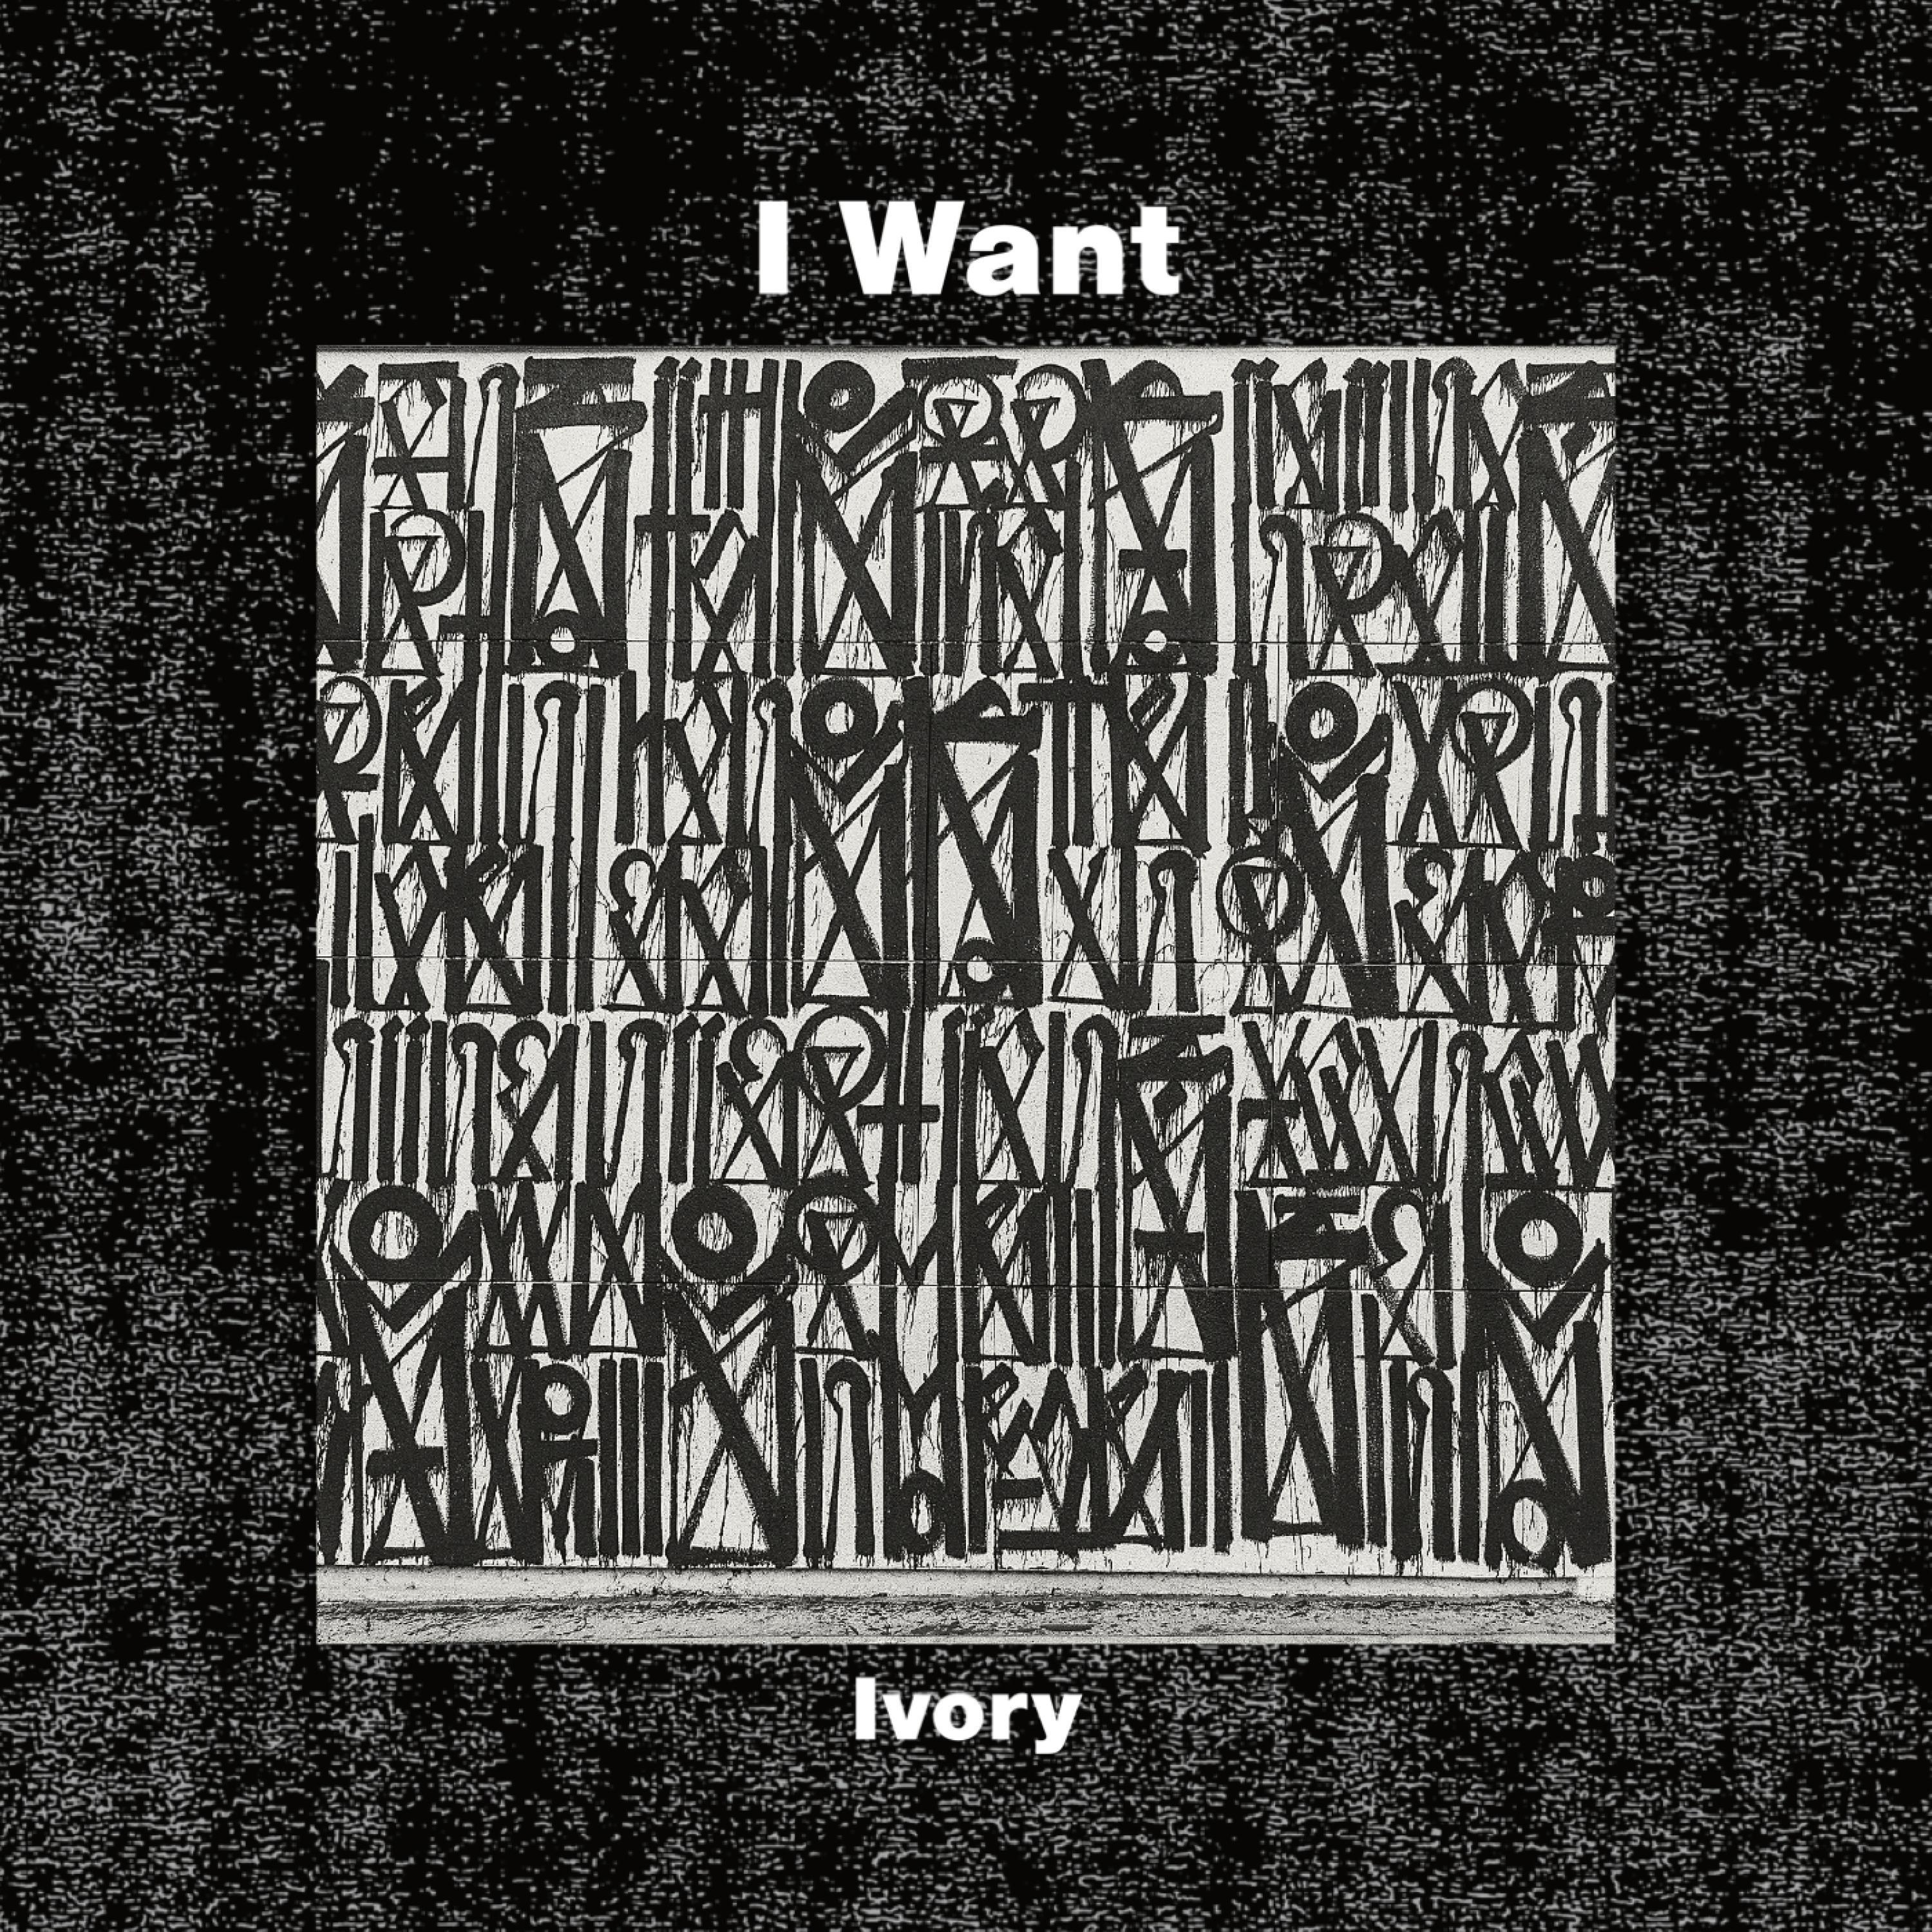 Ivory - I Want